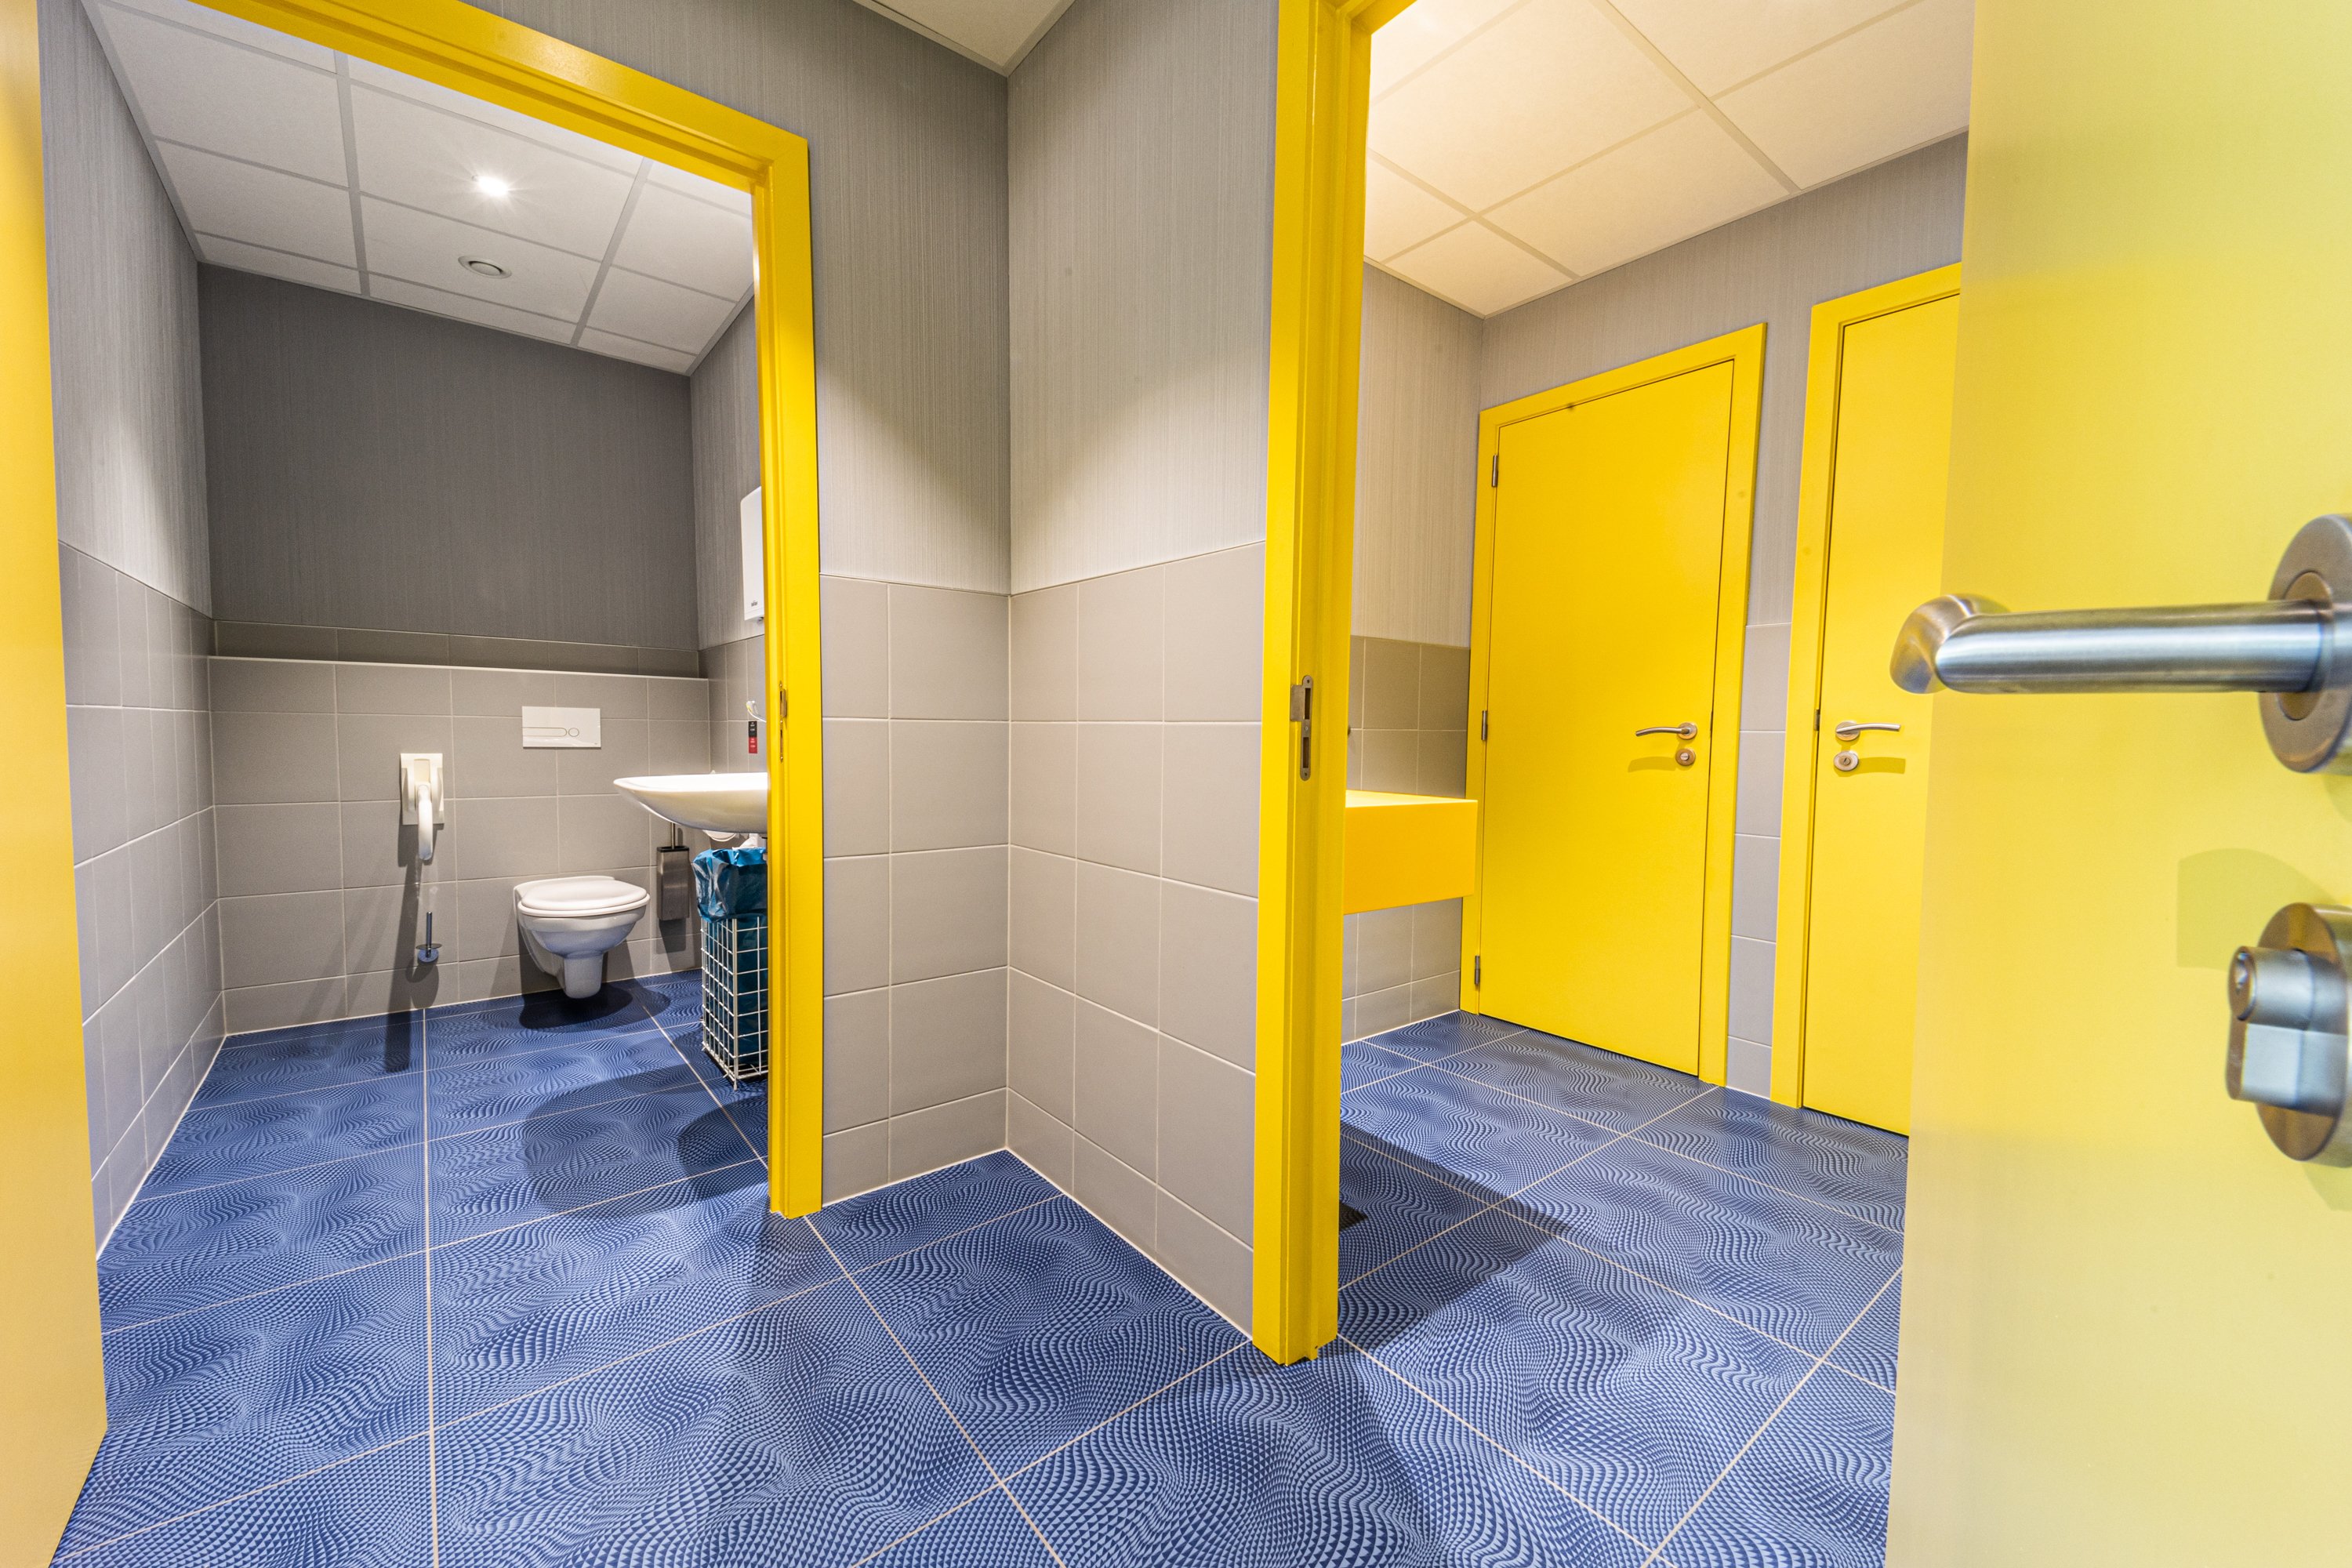 Eine große Gästetoilette in blauen und gelben Farben